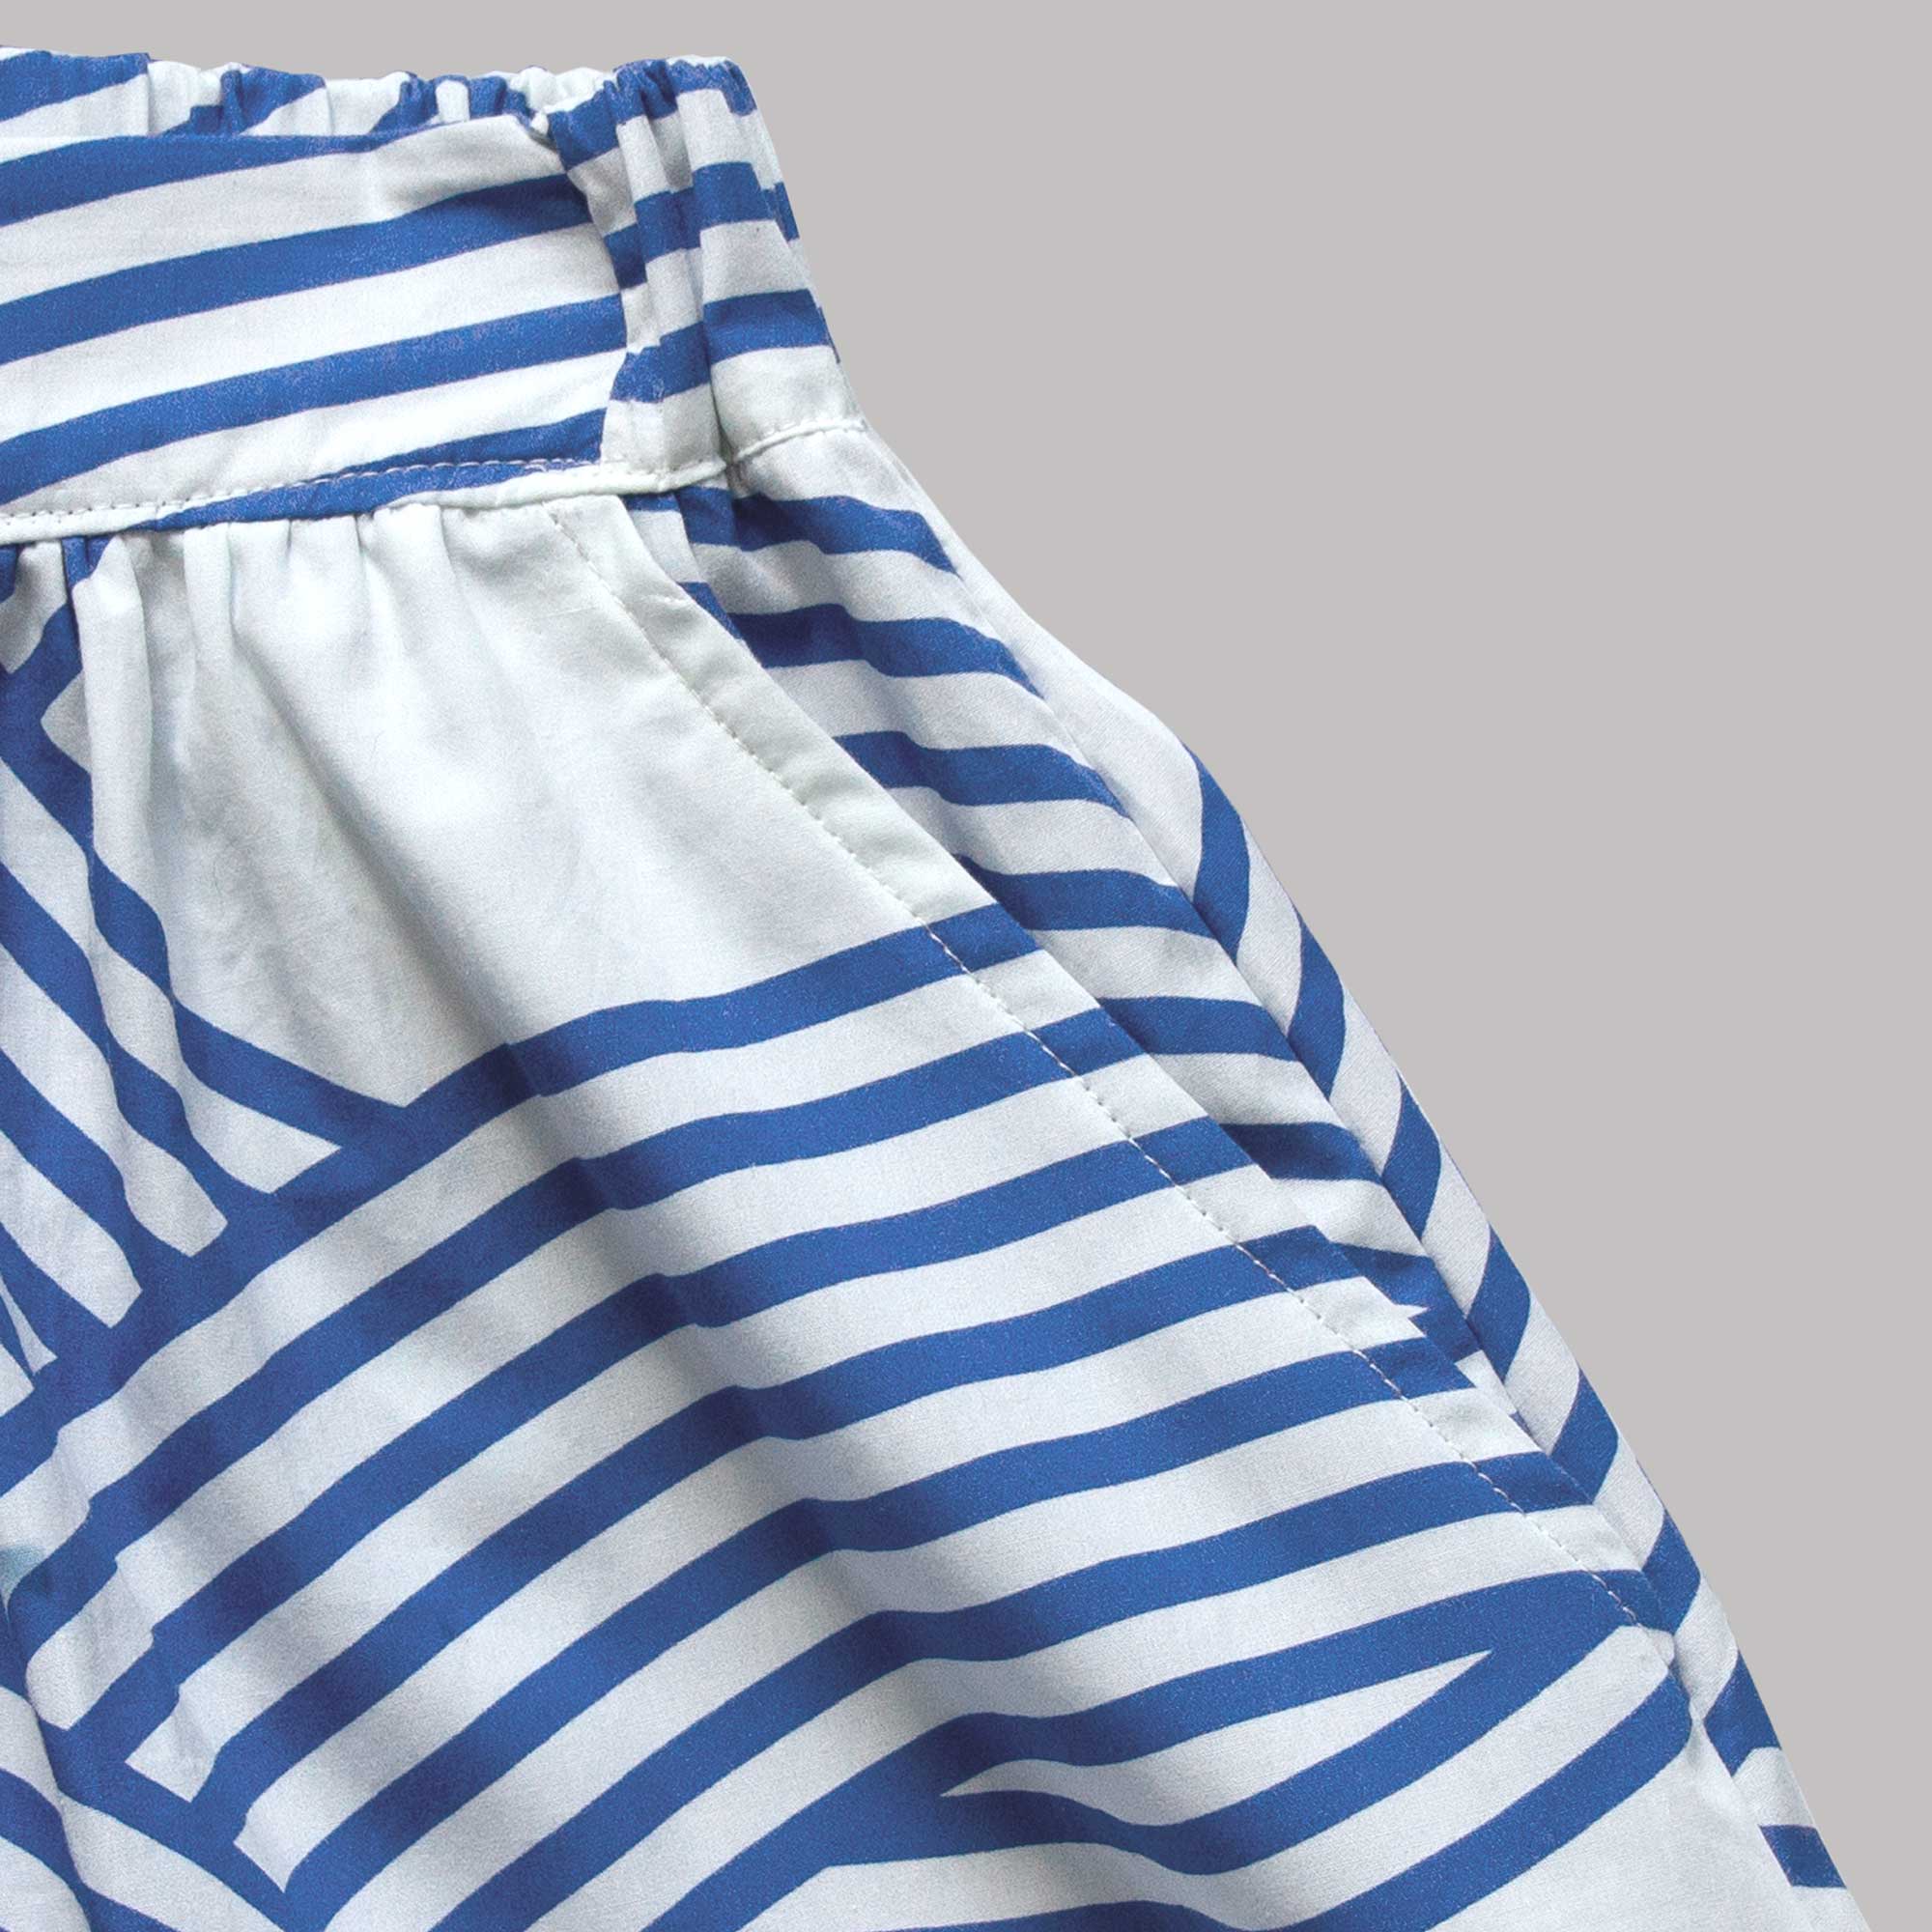 Ocean organic cotton skirt, printed in Germany sewn in Denmark. Design Anne Rosenberg